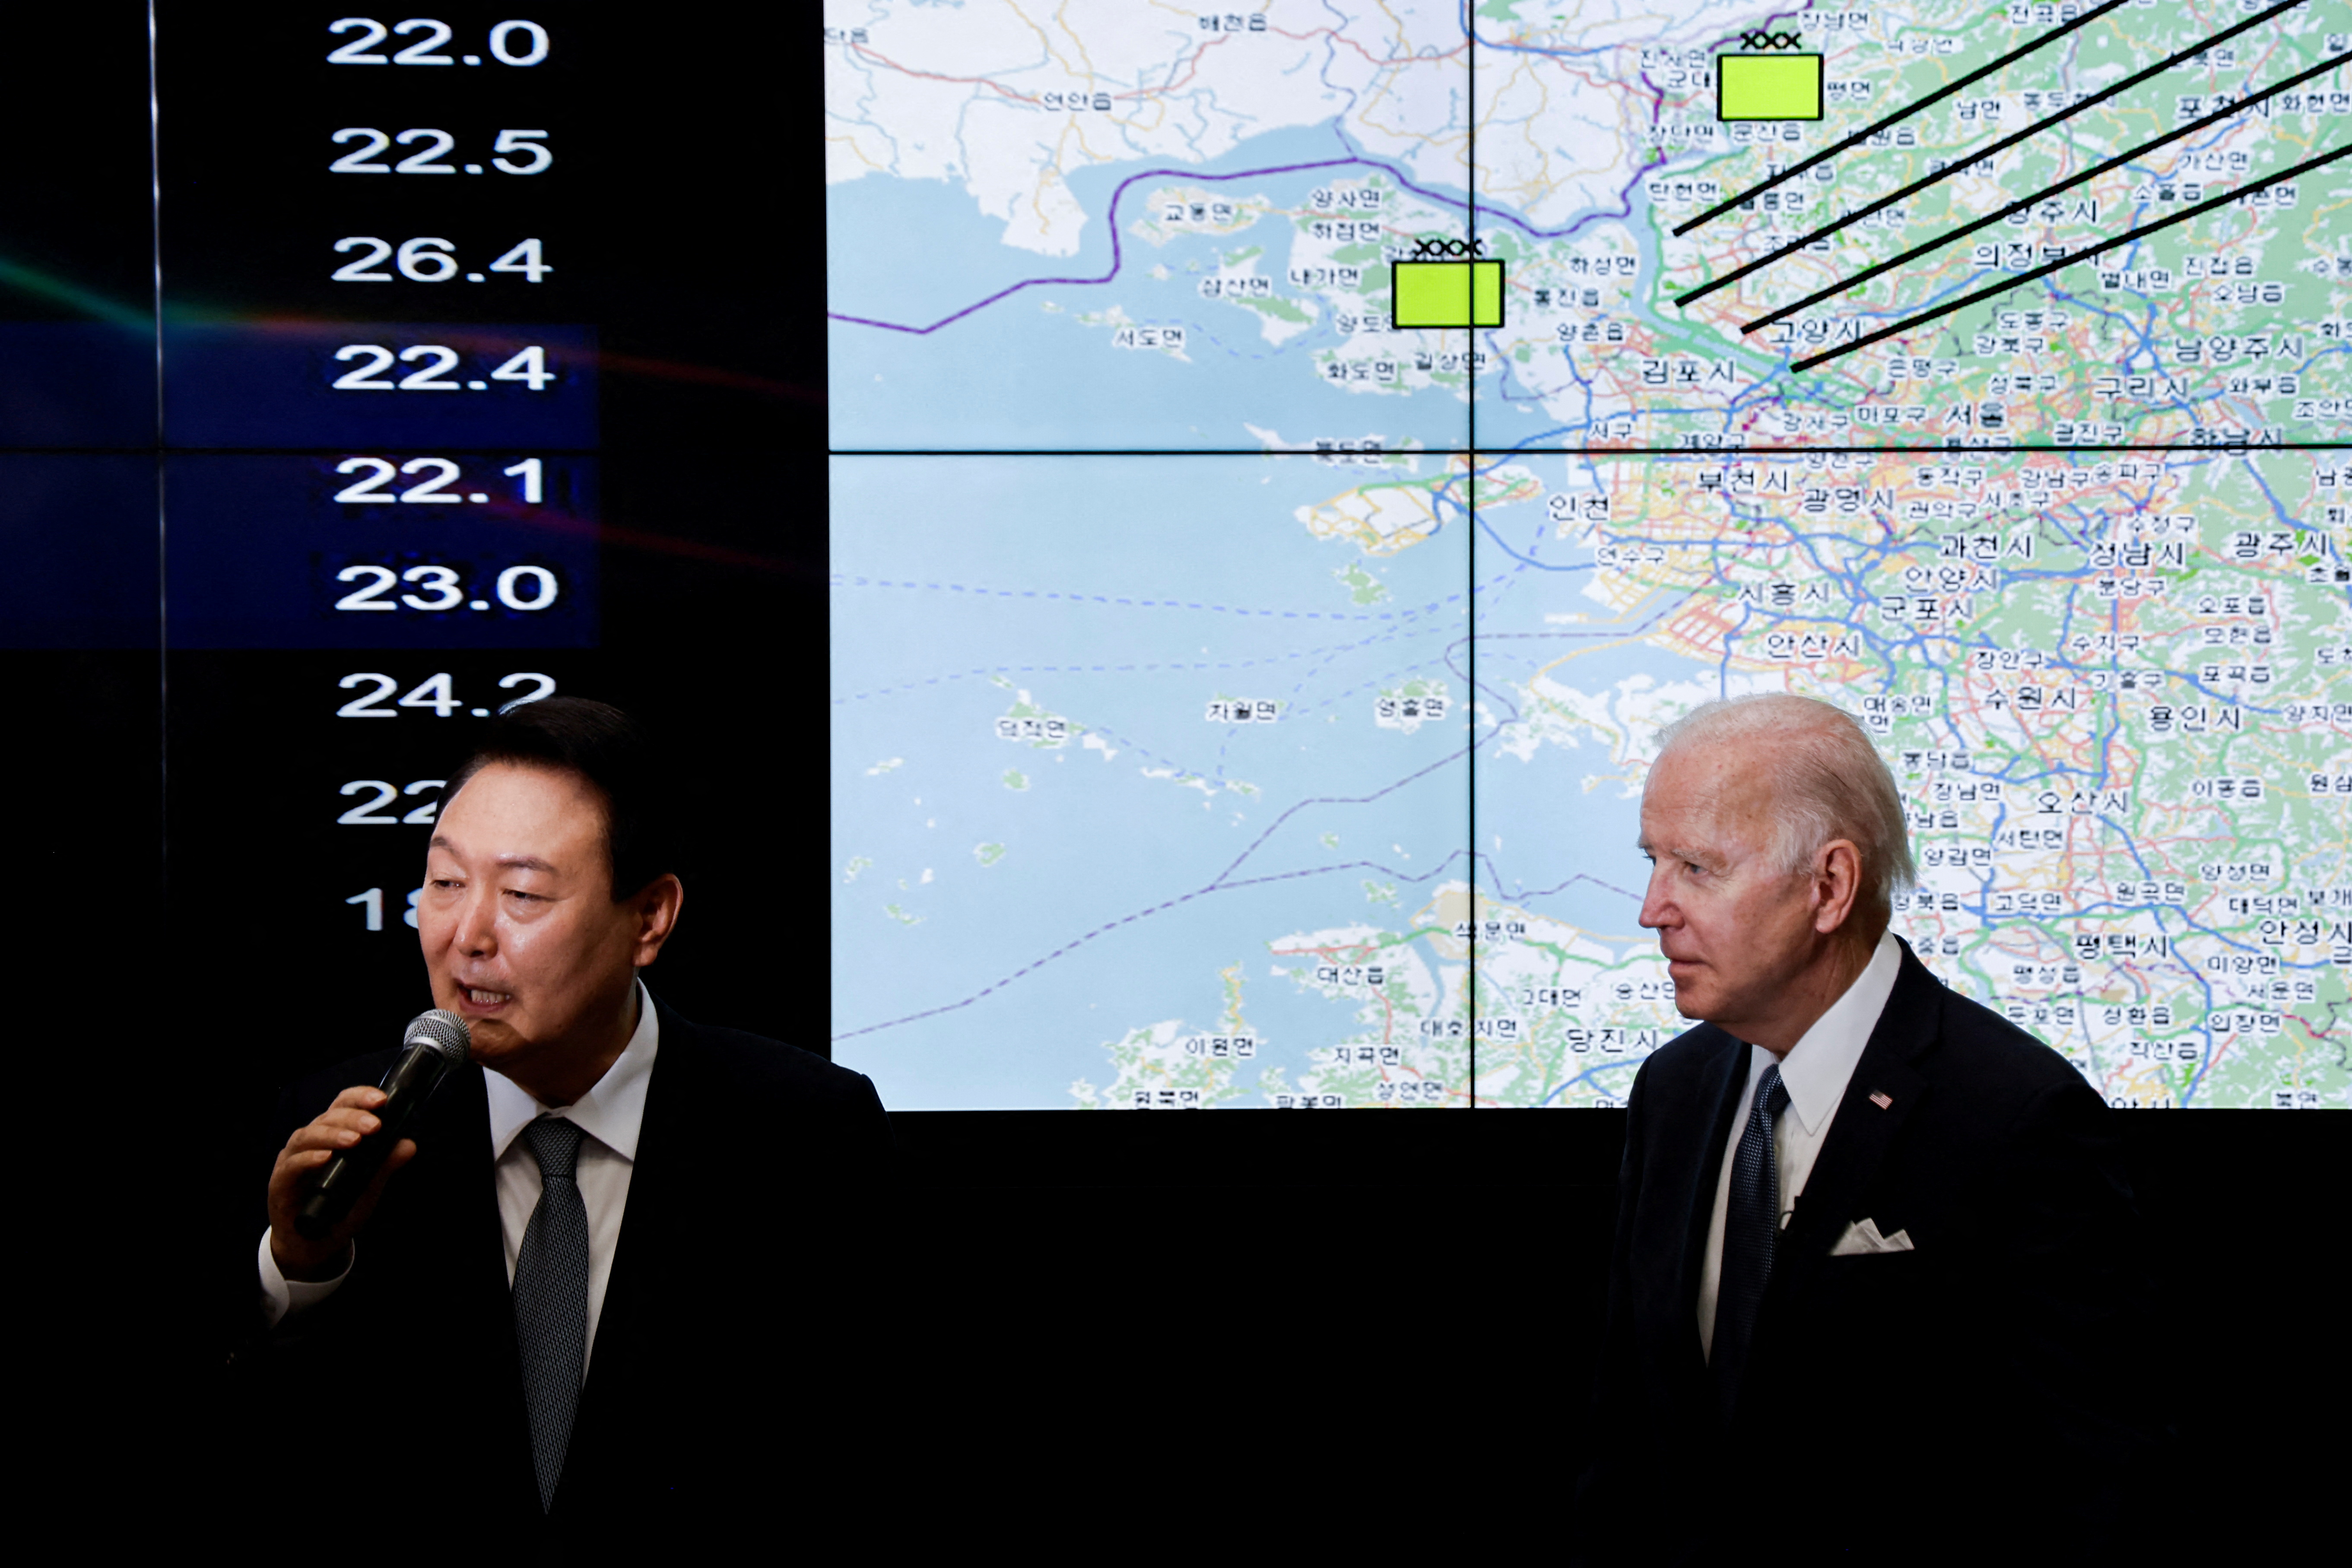 El presidente de Corea del Sur, Yoon Suk-yeol, habla mientras el presidente de Estados Unidos, Joe Biden, visita el Centro de Operaciones Aéreas en la Base Aérea de Osan en Pyeongtaek, Corea del Sur, el 22 de mayo de 2022. REUTERS/Jonathan Ernst